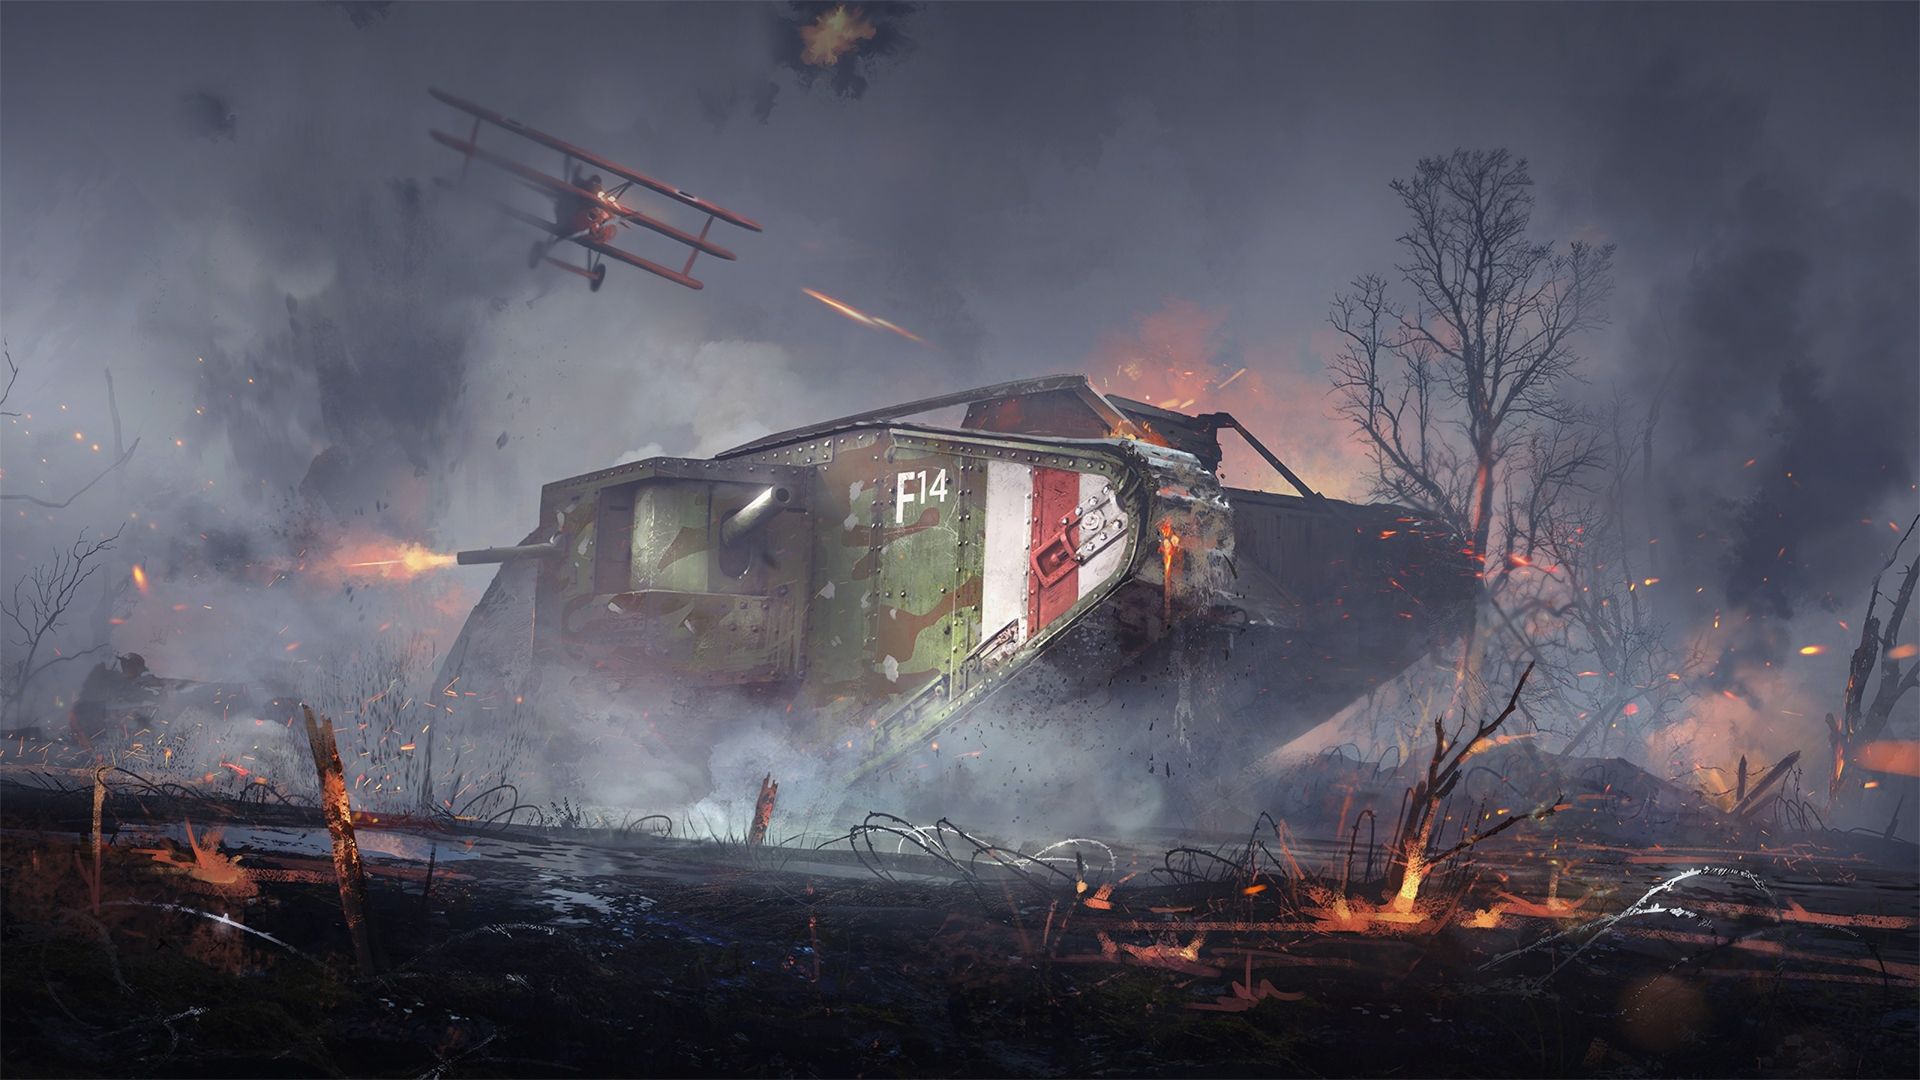 Battlefield 1 - #1 Animated wallpaper - Dreamscene - HD + DDL▽ on